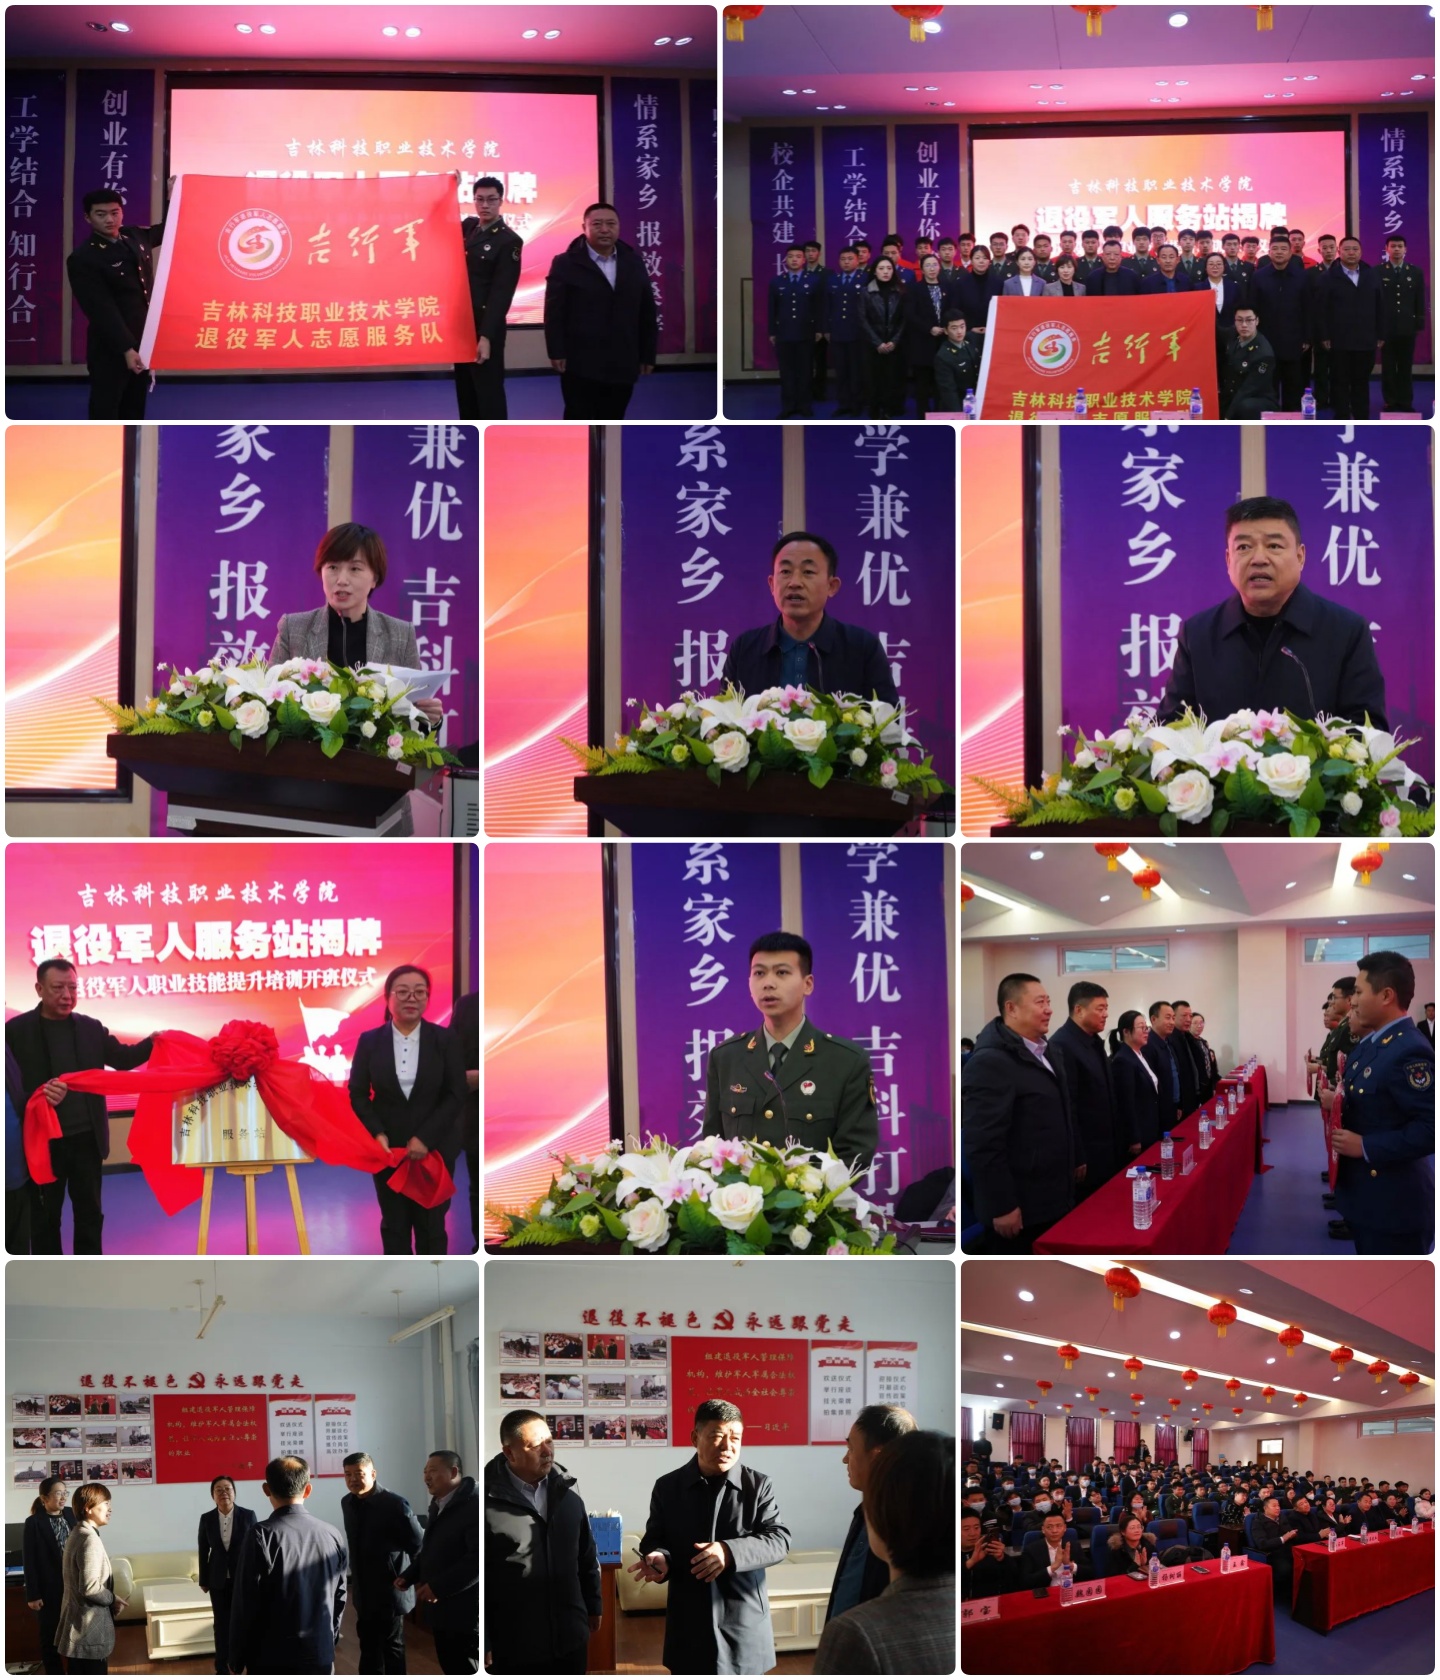 吉林科技职业技术学院挂牌成立长春市首家校内退役军人服务站